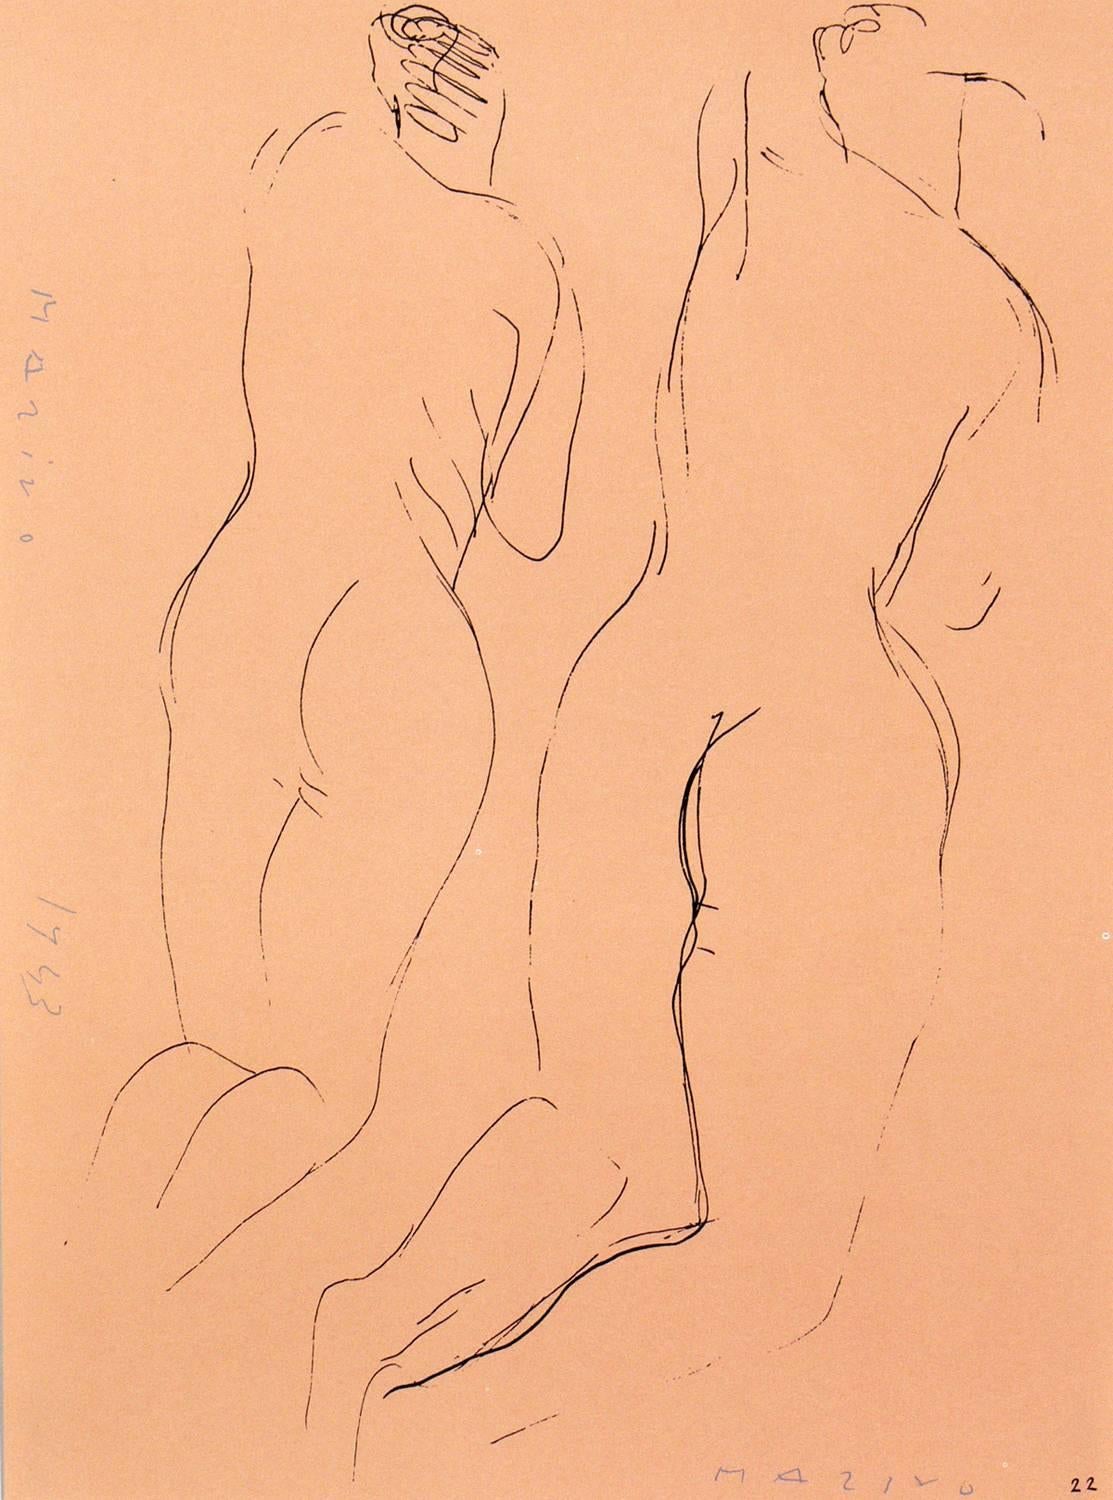 Zwei figurale Aktlithografien von Marino Marini, aus der Mappe Marino Marini, gedruckt bei Carl Schünemann, Deutschland, um 1968. Sie wurden in saubere, schwarz lackierte Galerierahmen gerahmt.